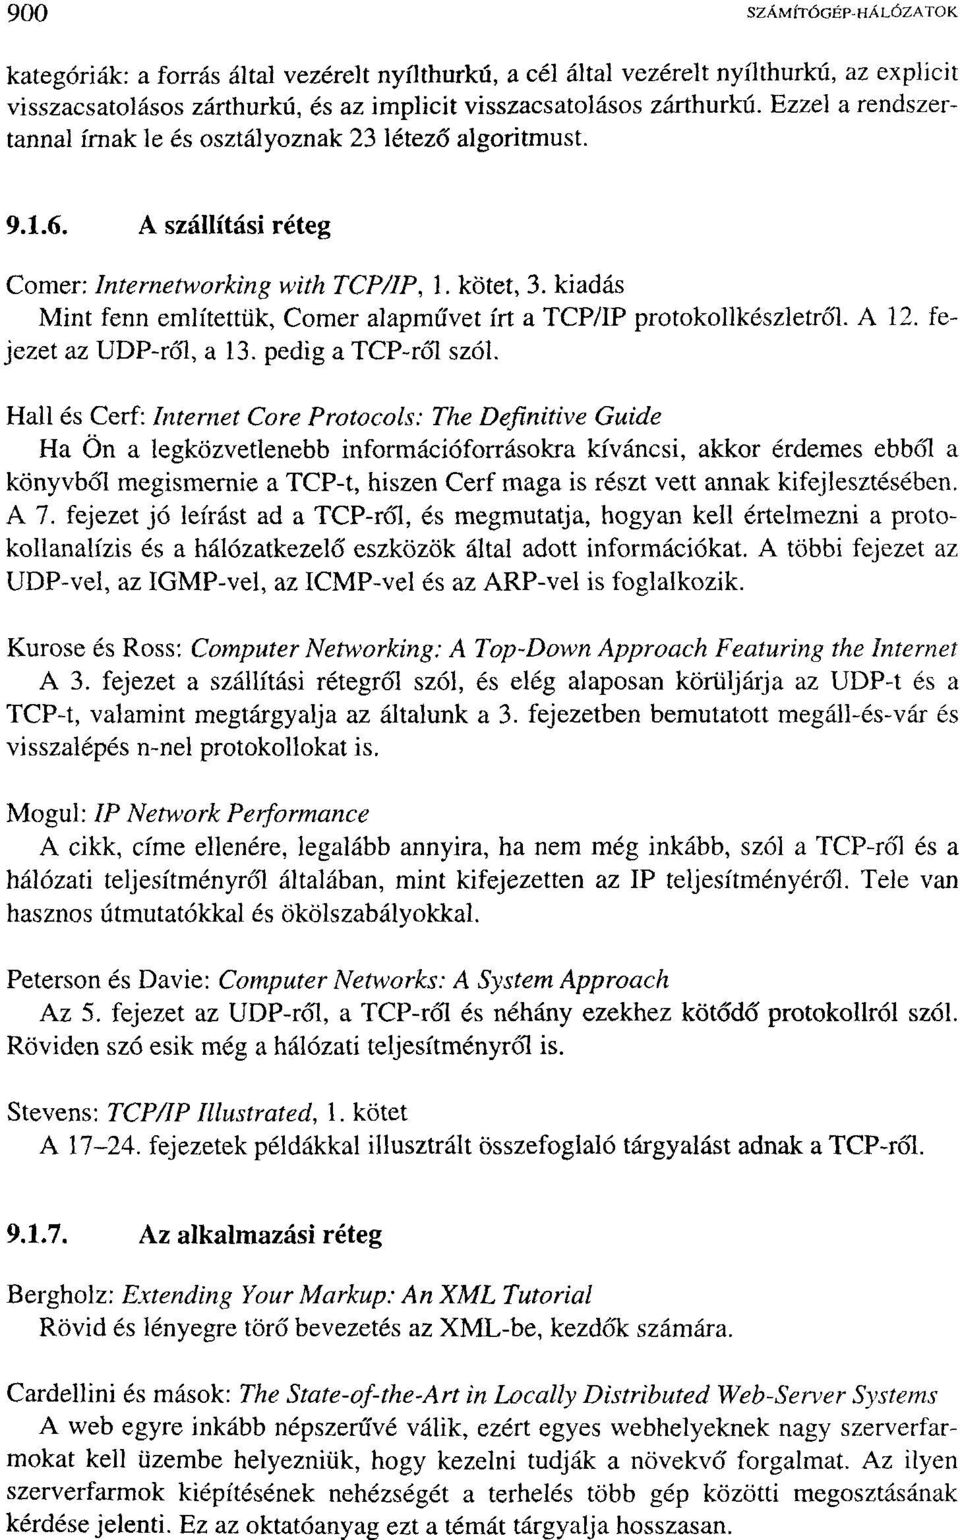 kiadás Mint fenn említettük, Comer alapművet írt a TCP/IP protokollkészletről. A 12. fejezet az UDP-ről, a 13. pedig a TCP-ről szól.